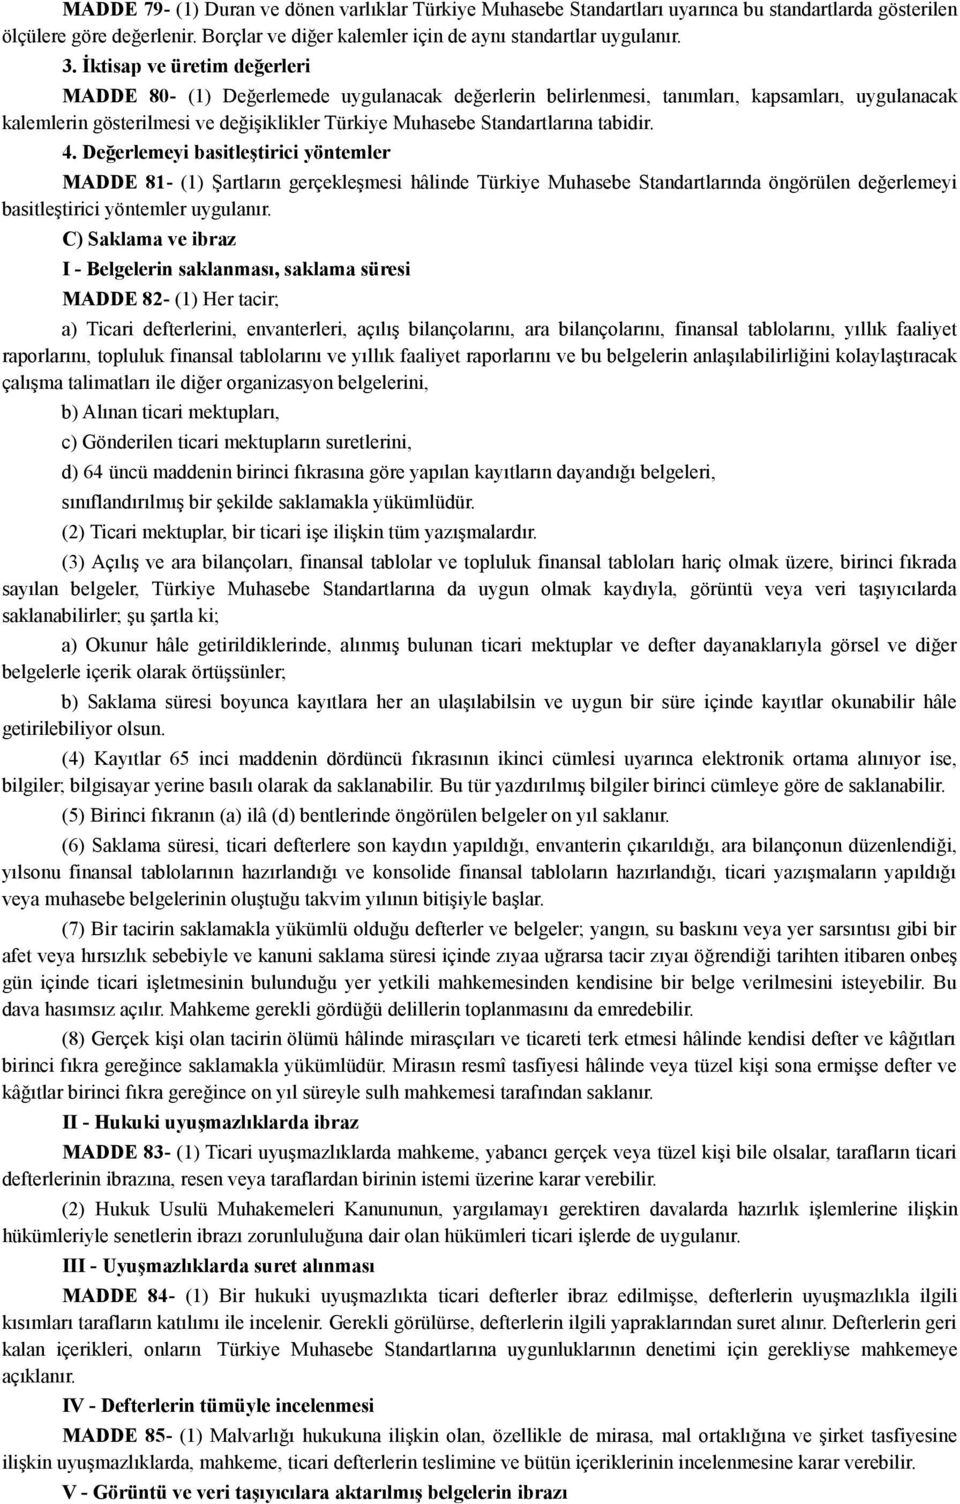 tabidir. 4. Değerlemeyi basitleştirici yöntemler MADDE 81- (1) Şartların gerçekleşmesi hâlinde Türkiye Muhasebe Standartlarında öngörülen değerlemeyi basitleştirici yöntemler uygulanır.